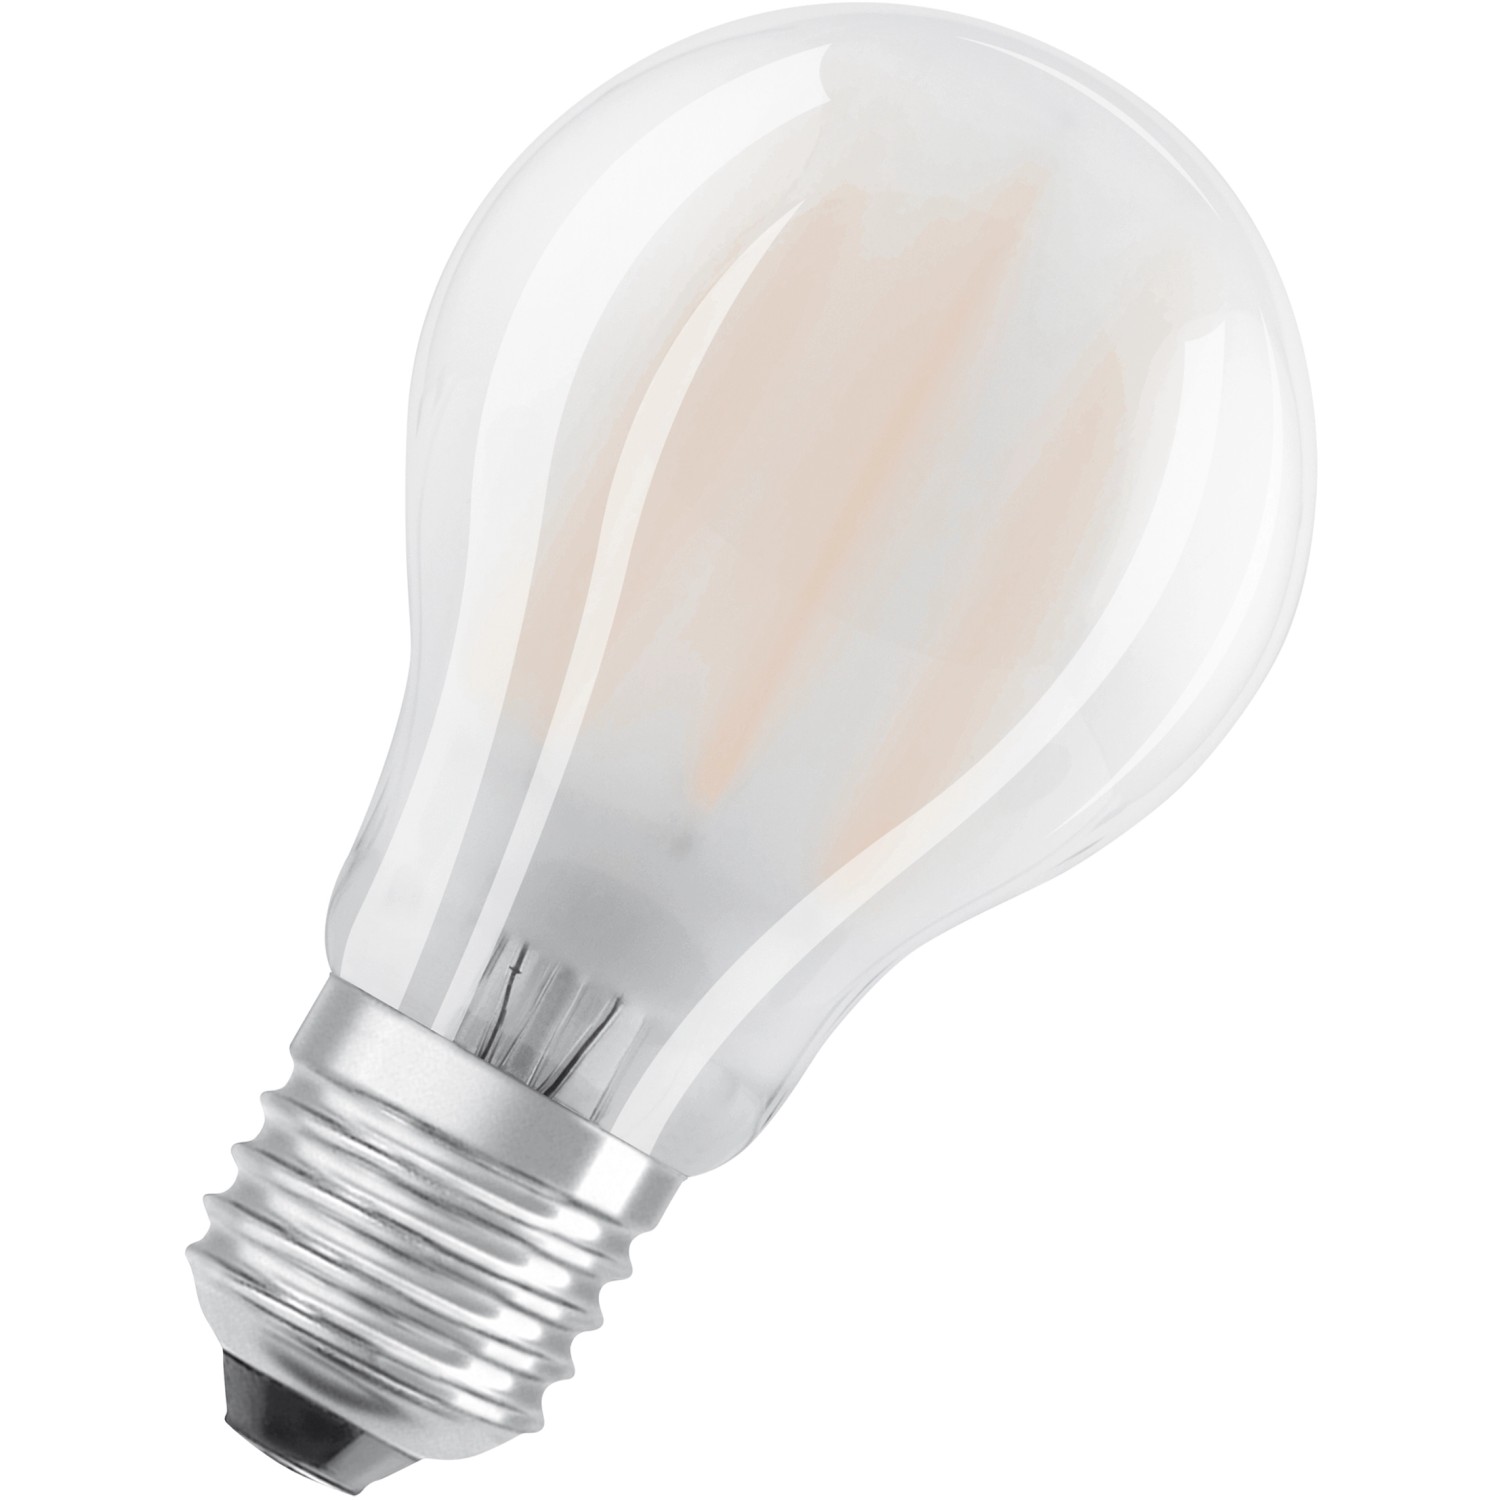 Bellalux LED-Lampe Glühlampenform E27 / 7 W (806 lm) Kaltweiß